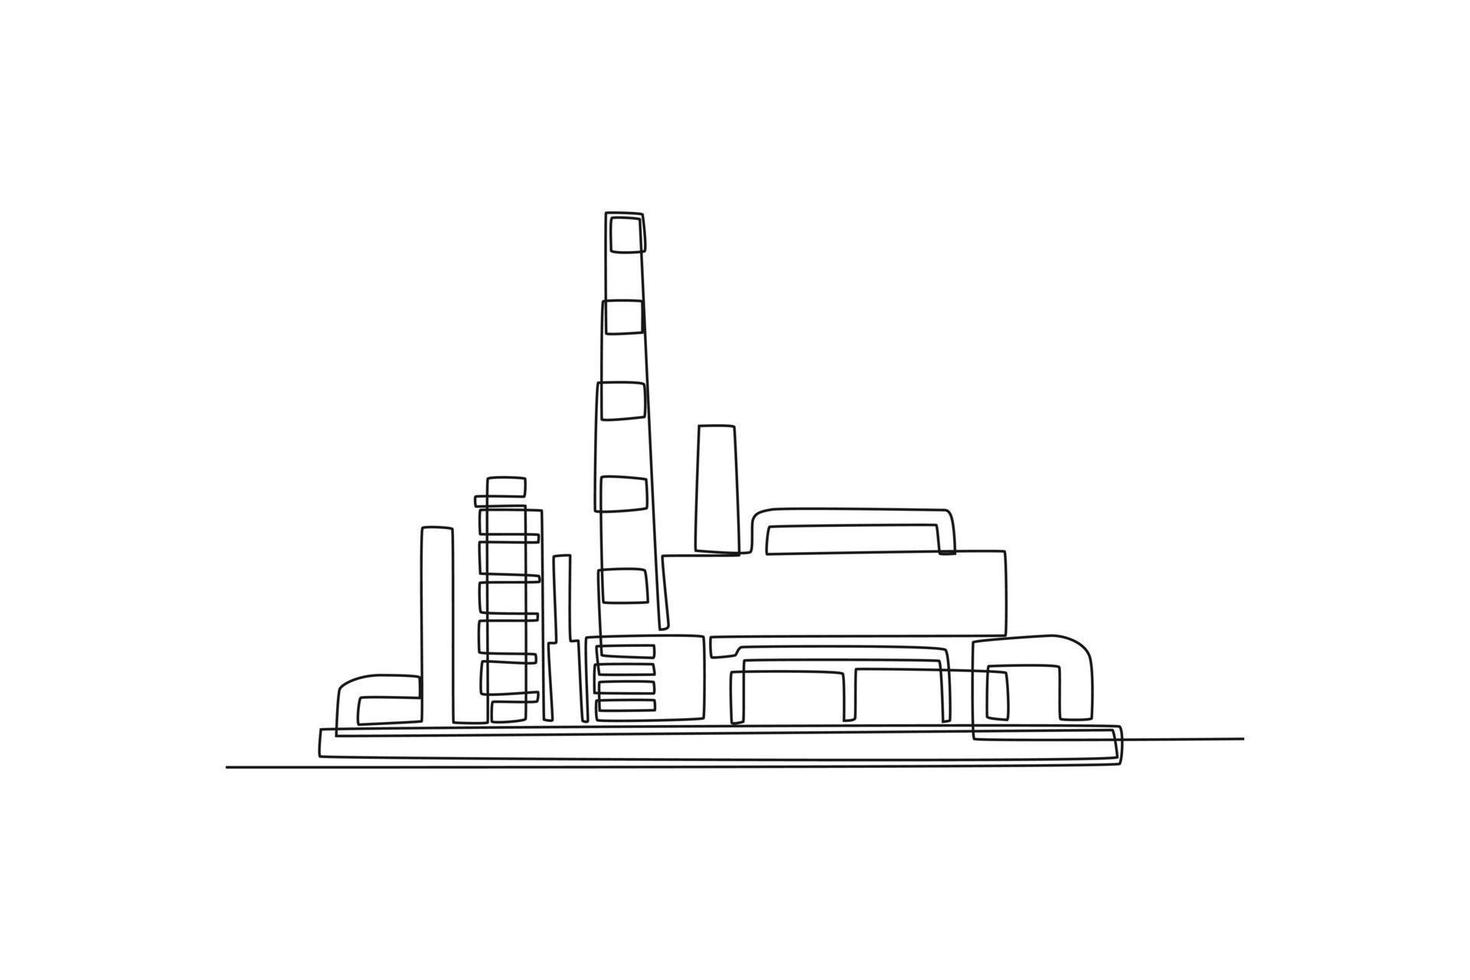 single een lijn tekening industrieel fabriek schets. fabriek architectuur concept. doorlopend lijn trek ontwerp grafisch vector illustratie.